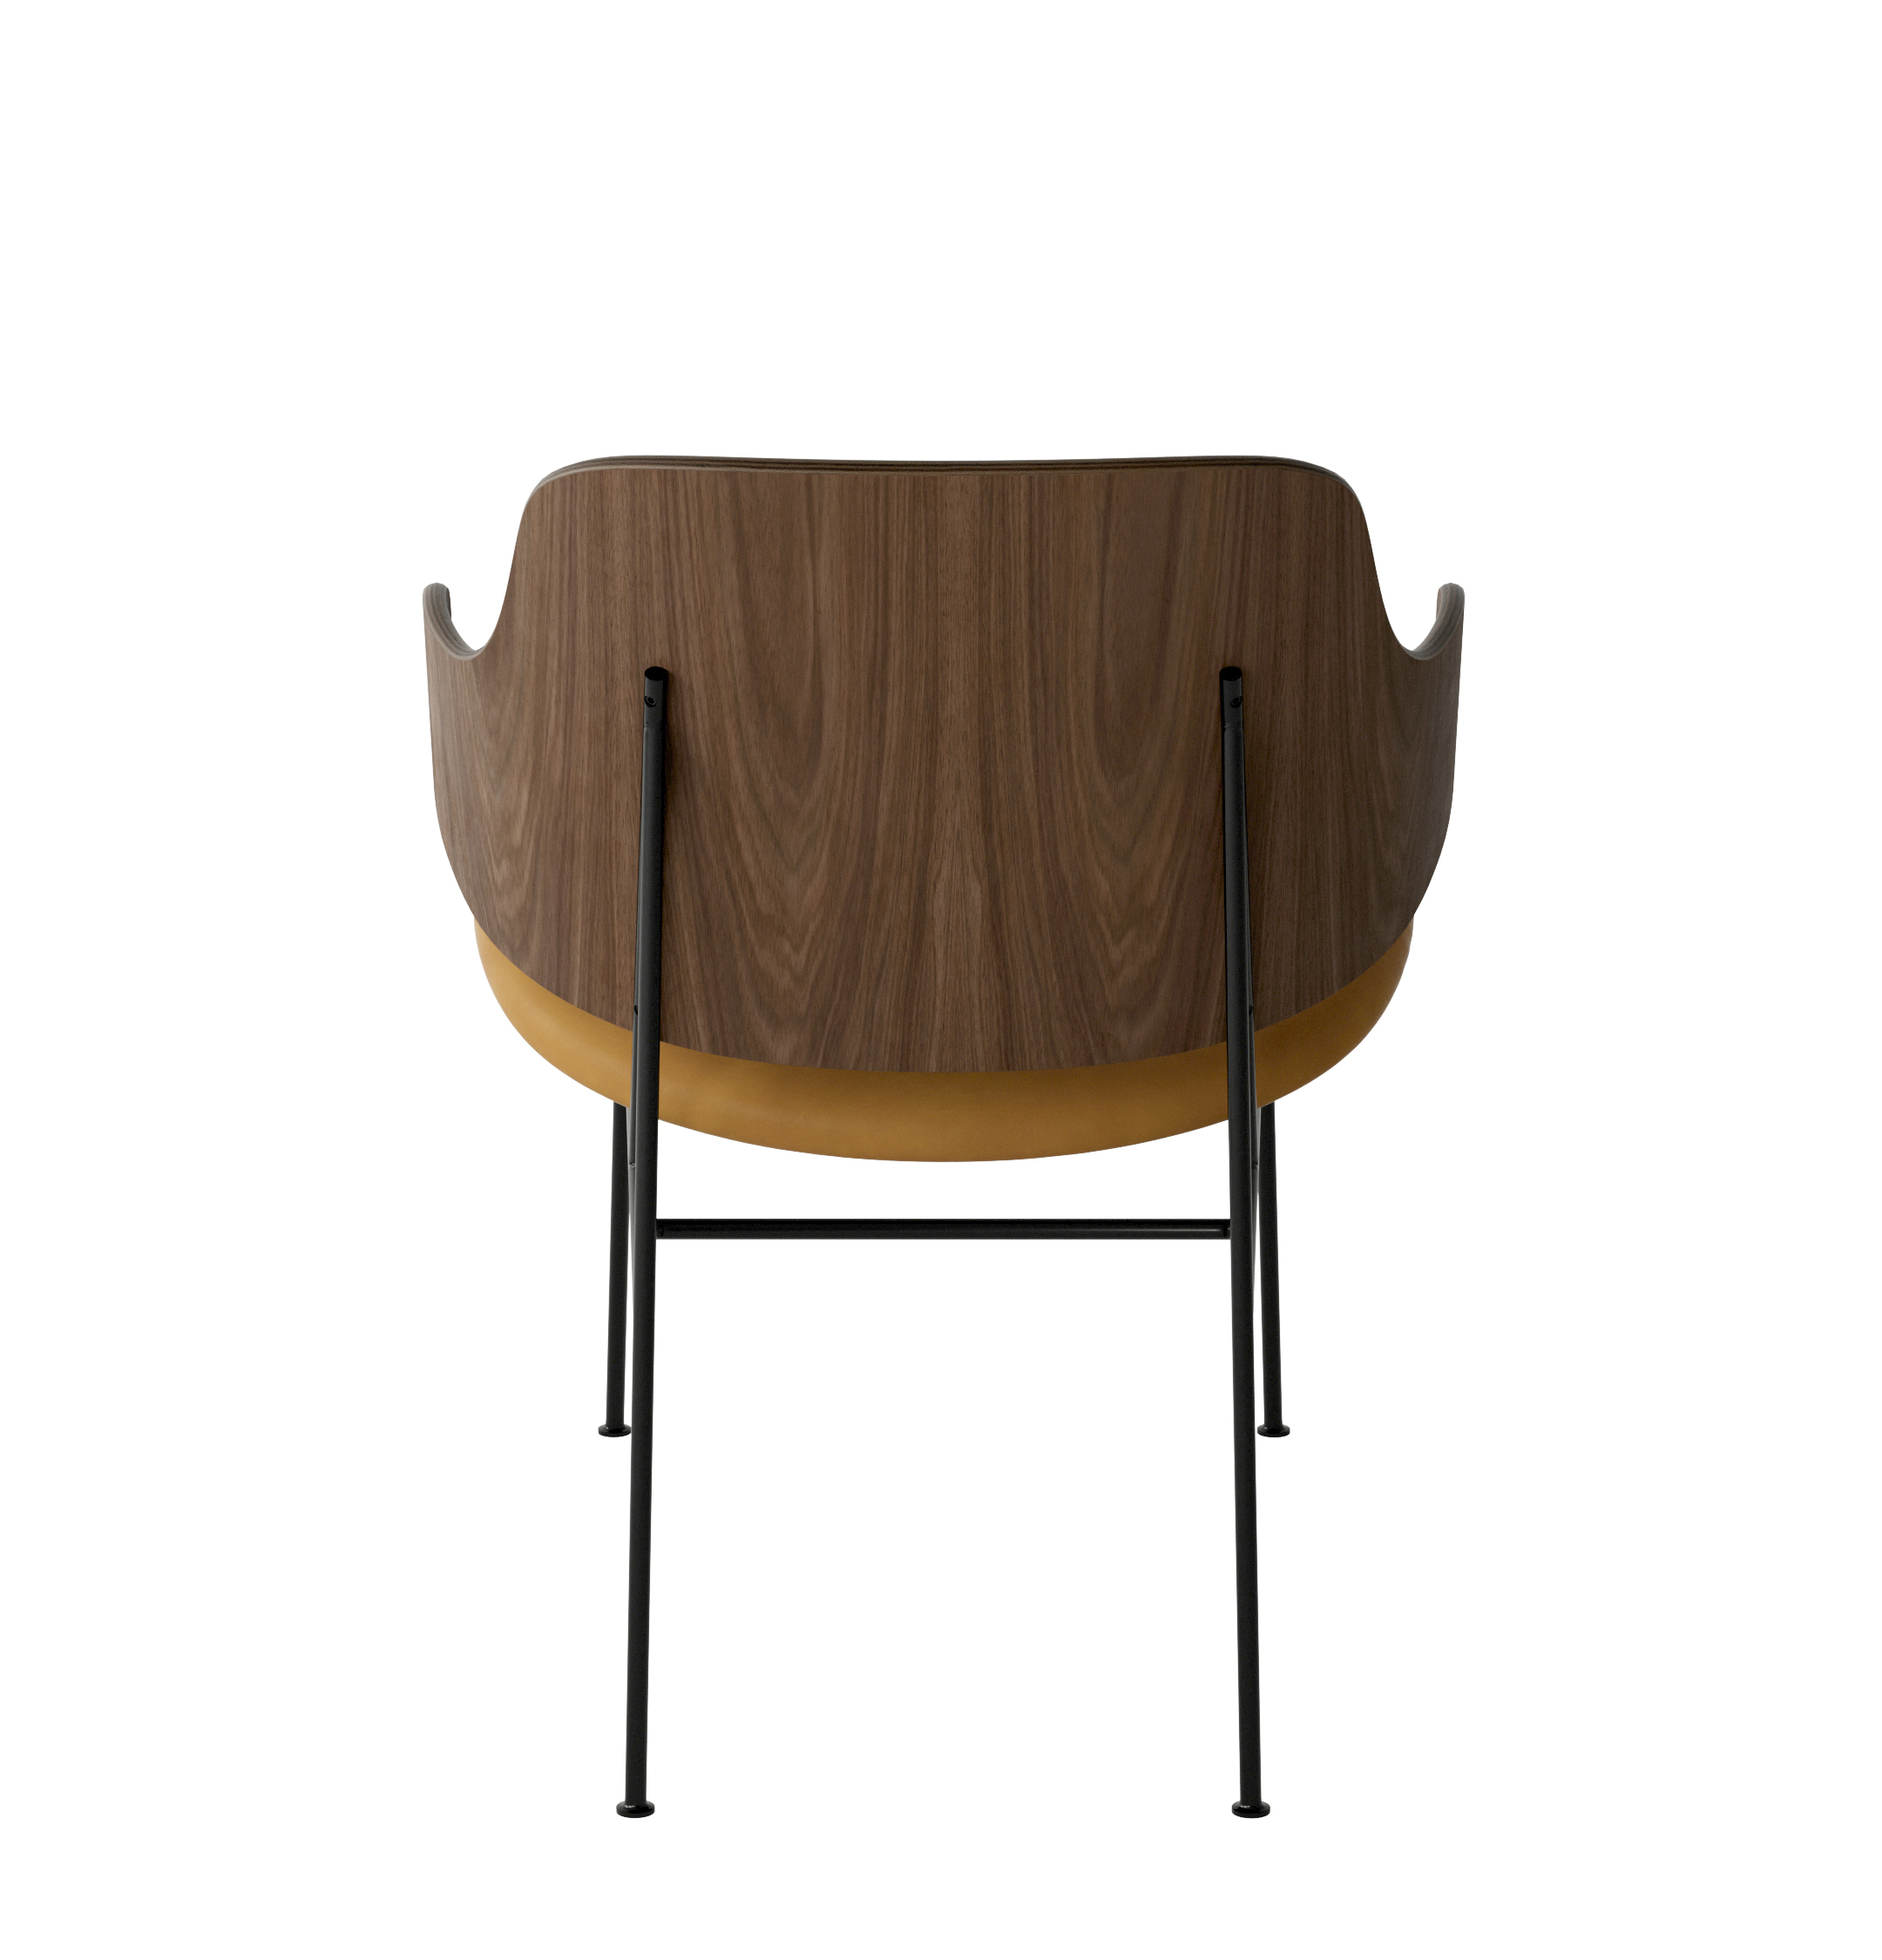 Menu - The Penguin fauteuil, zwart stalen frame, walnoten rugleuning, 0250 (Cognac)